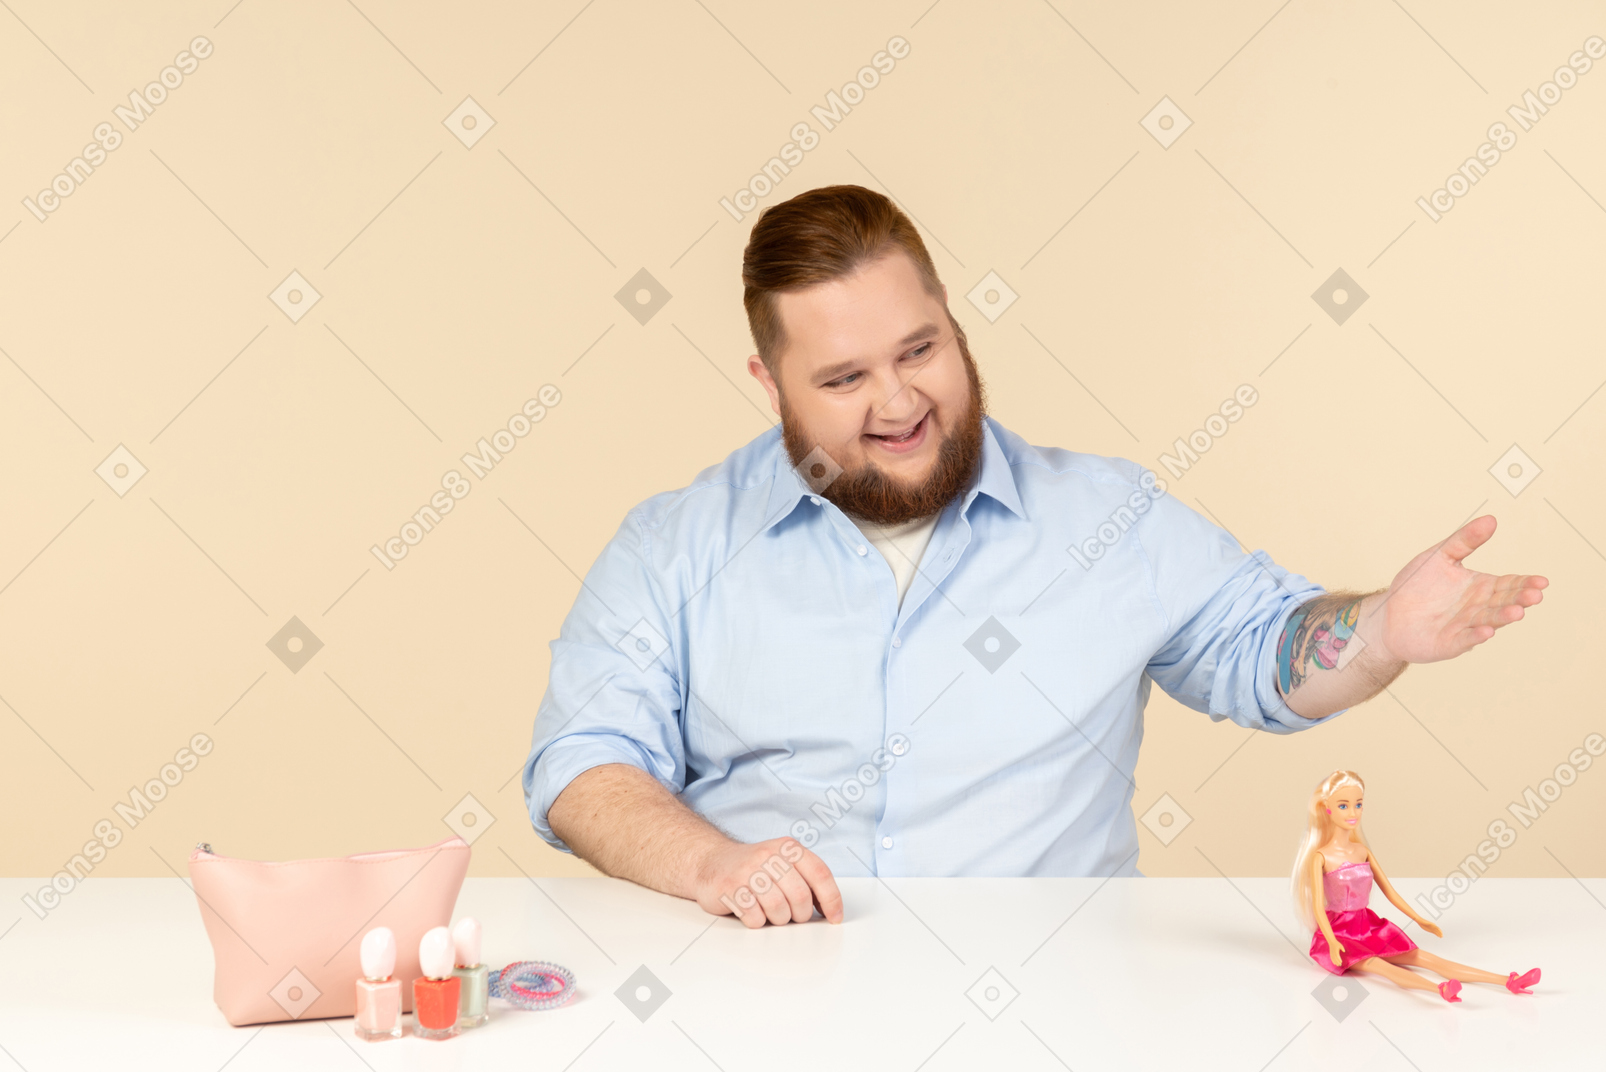 Смеющийся большой человек сидит за столом с косметикой и куклой барби на нем